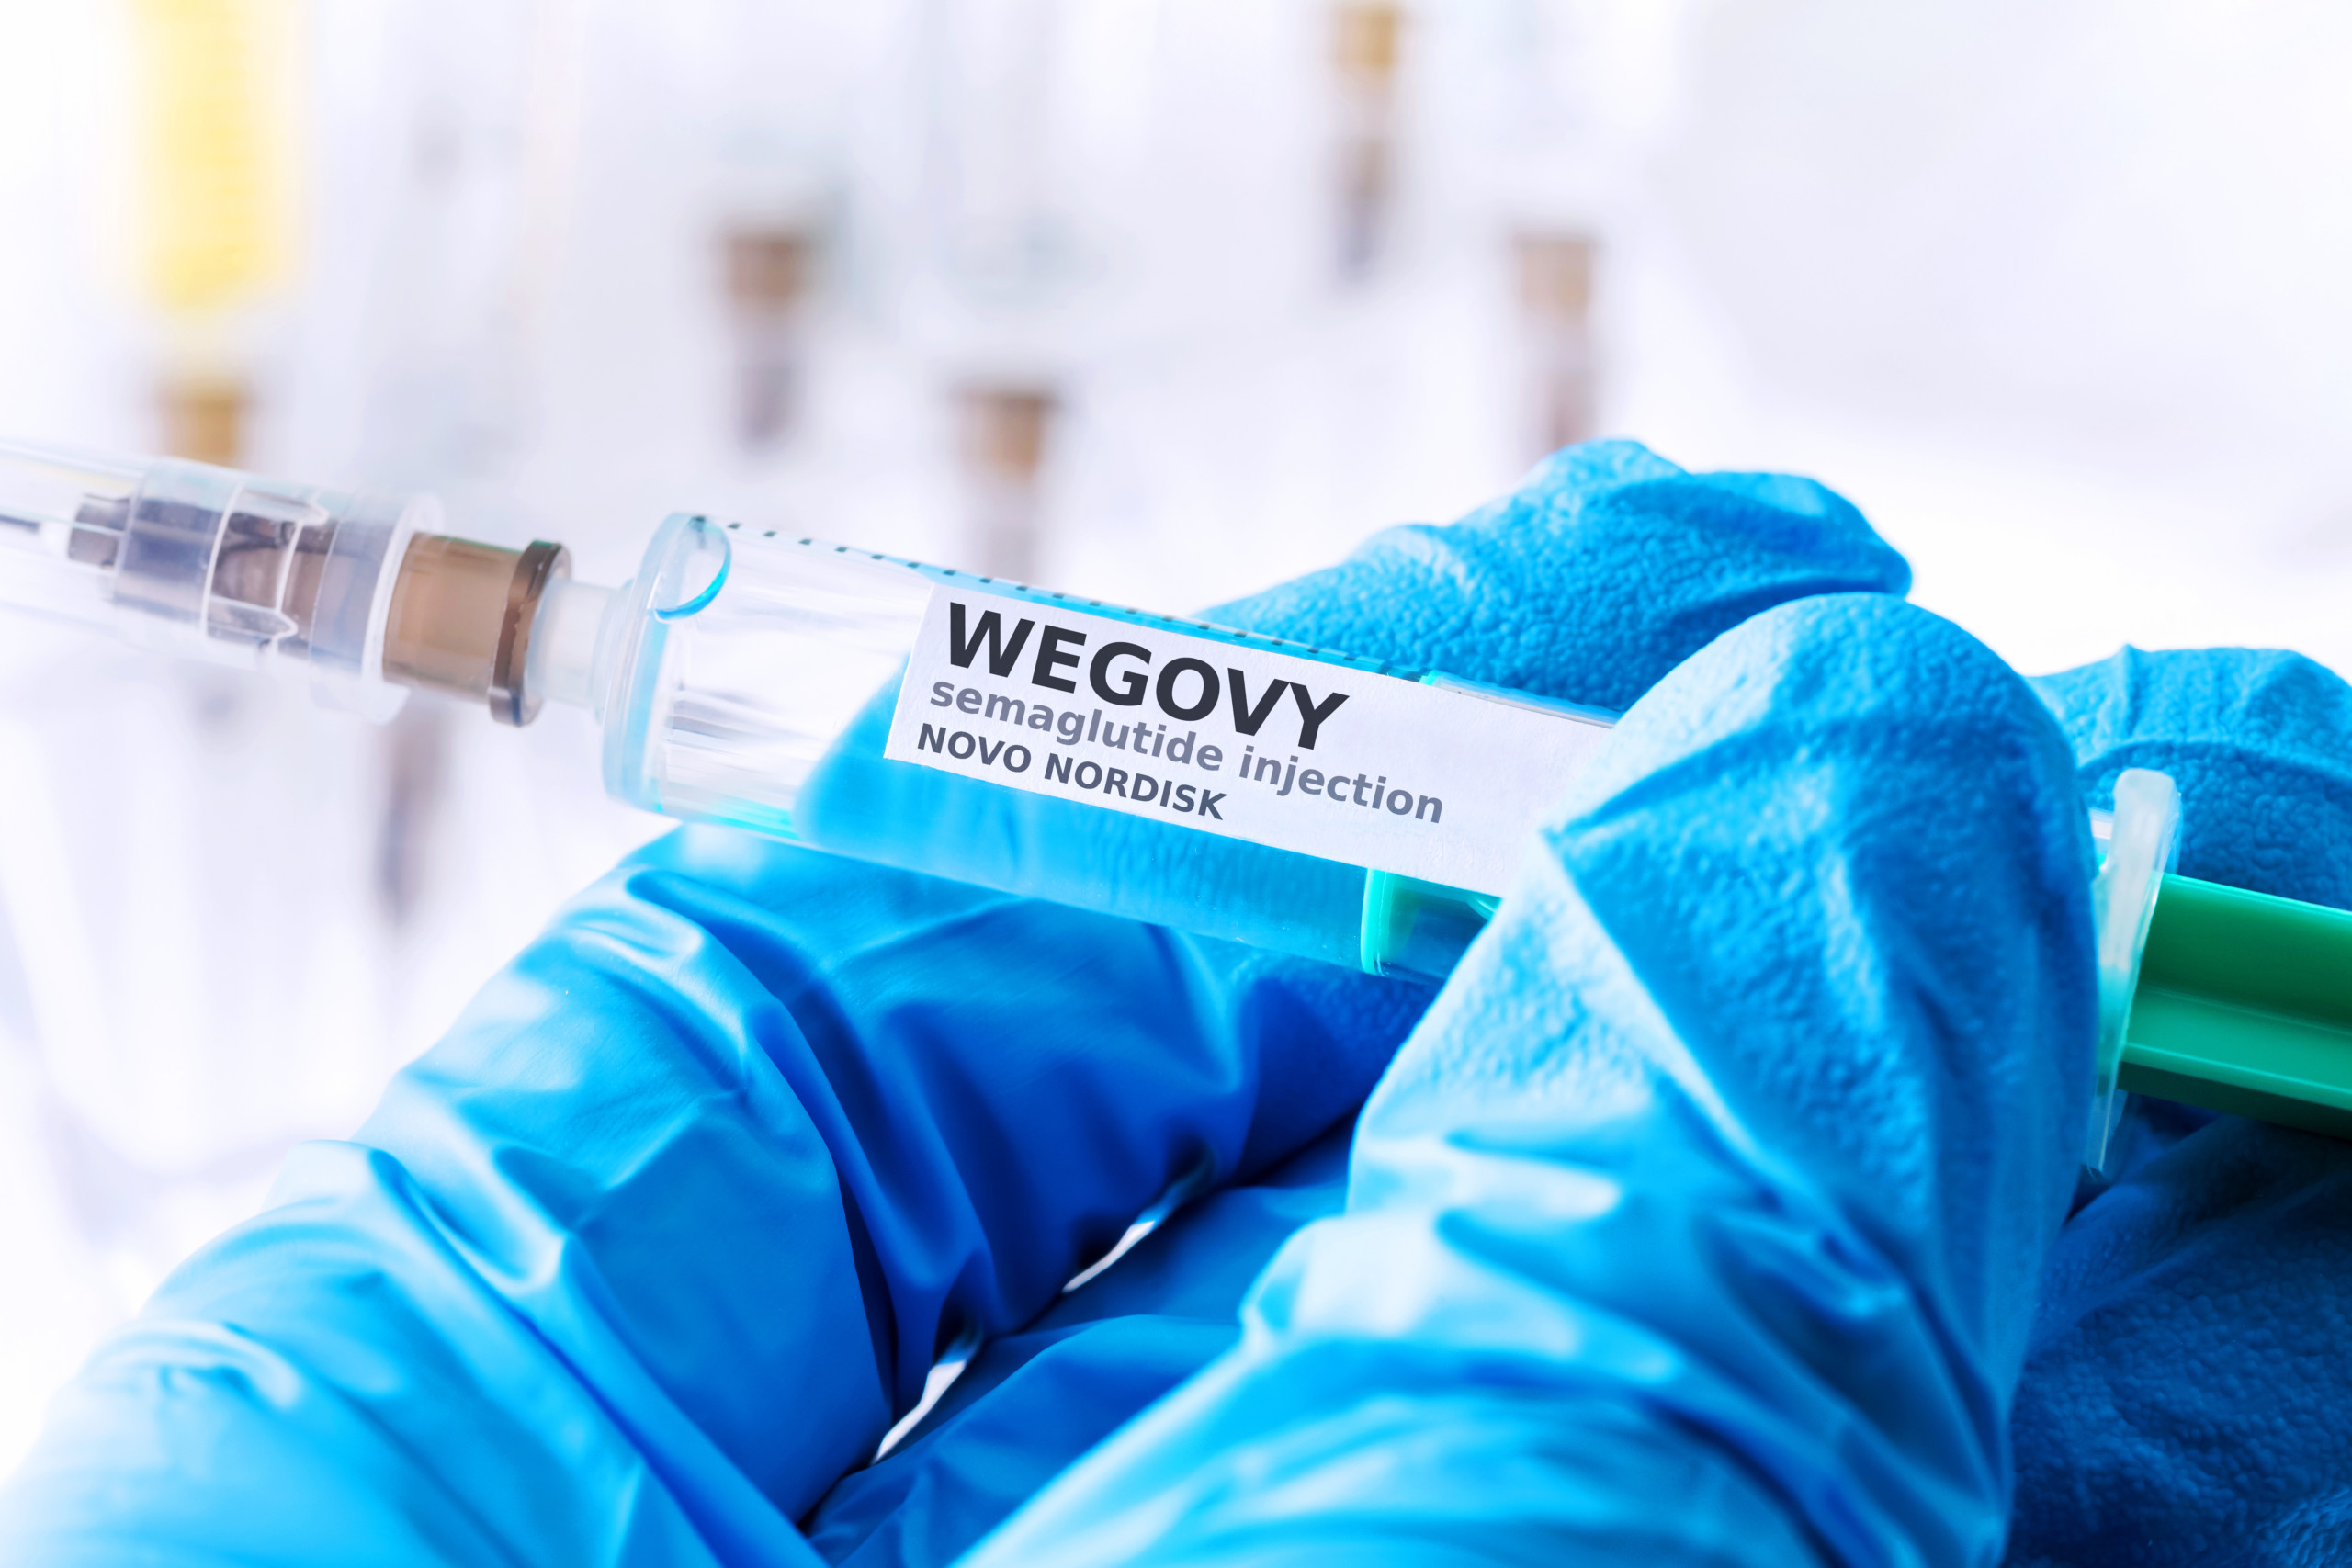 Novo Nordisk: Steigende Nachfrage nach Diabetes- und Adipositas-Therapien - Umsatz mit Abnehmmittel „Wegovy“ verdoppelt sich